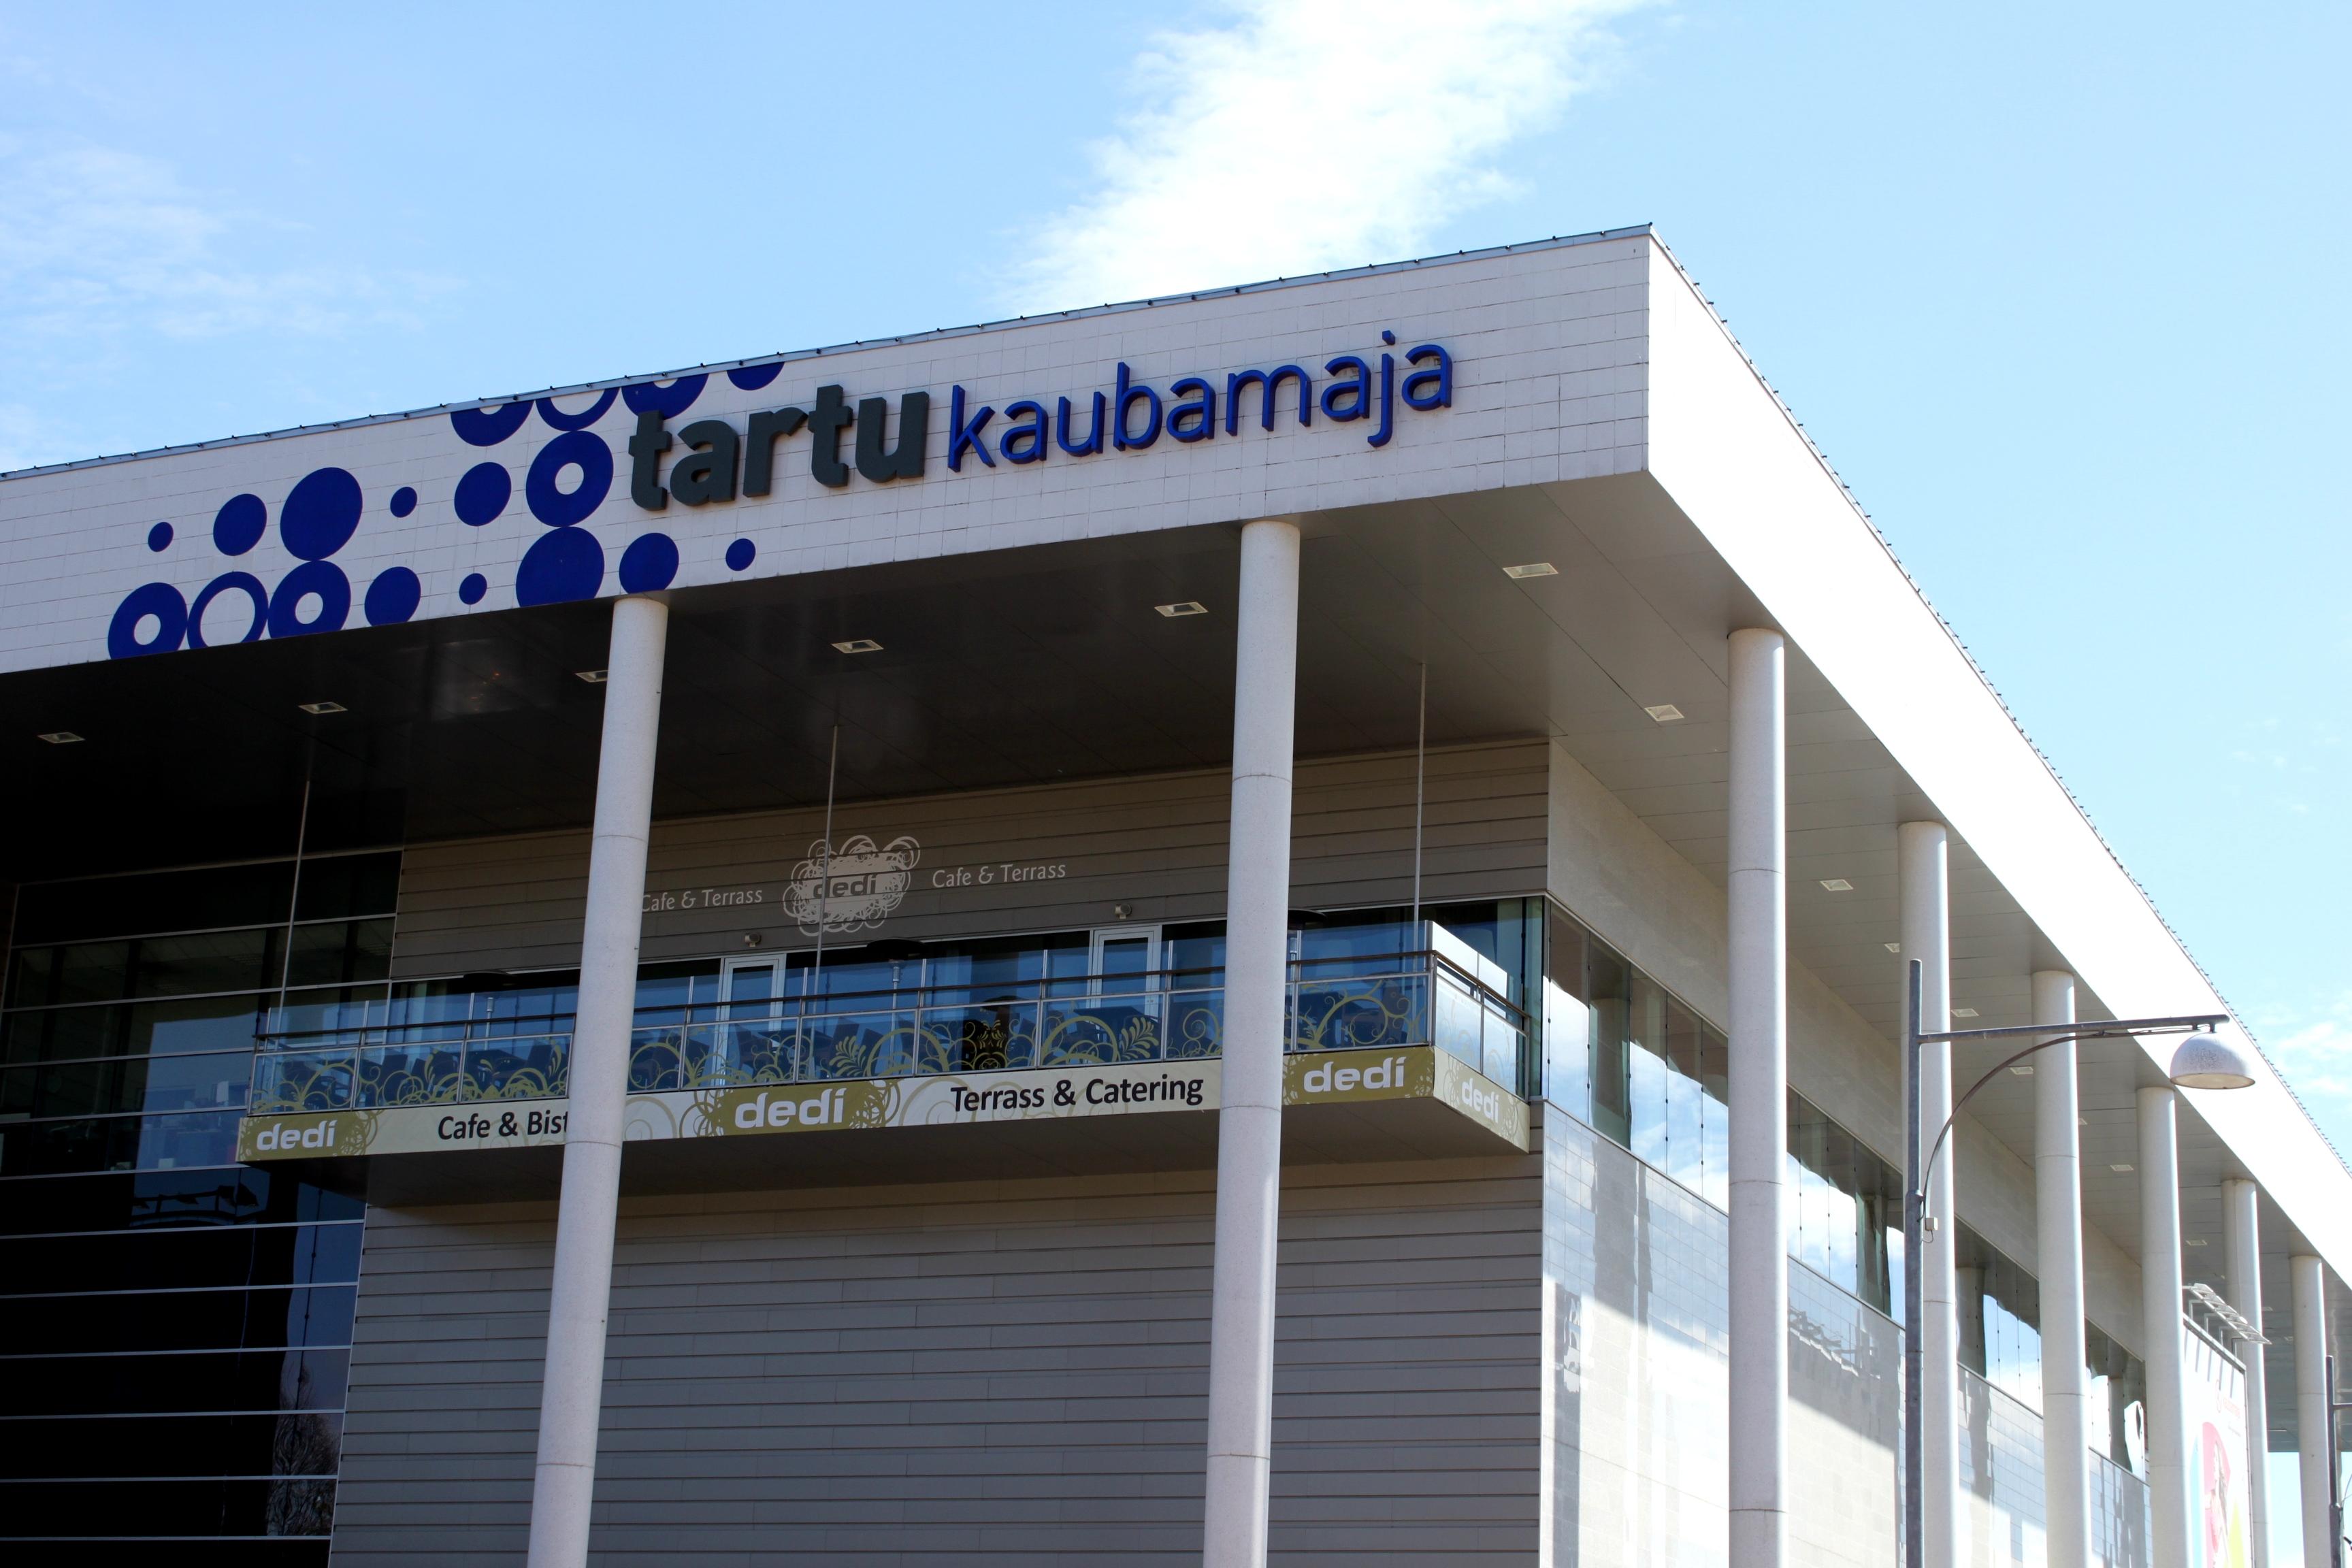 Cover image of this place Tartu Kaubamaja